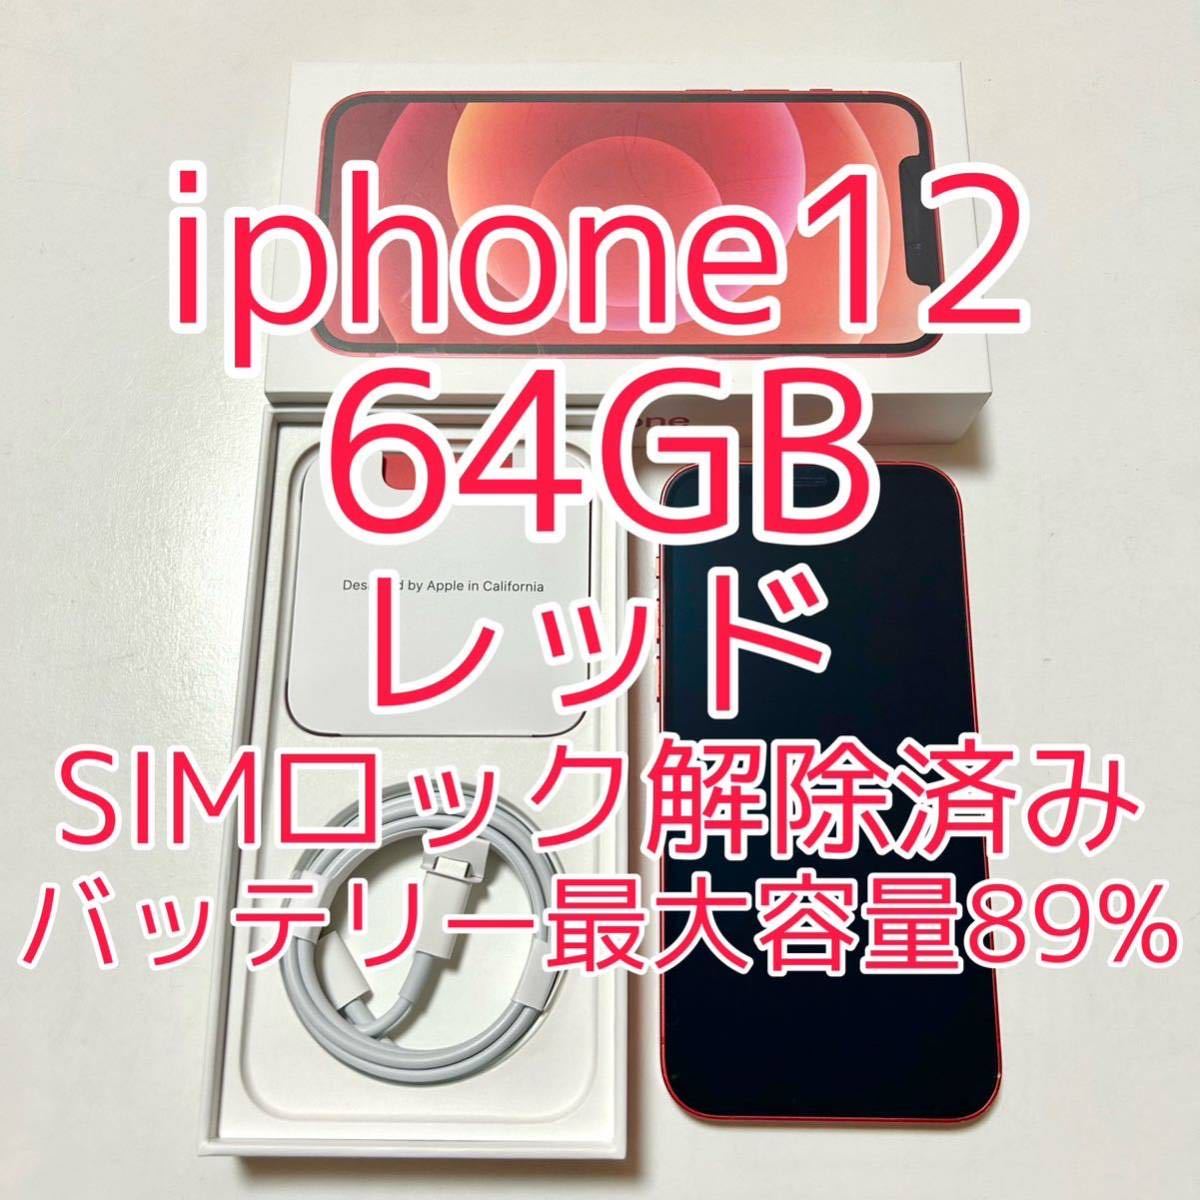 iphone12 本体 64GB レッド SIMフリー